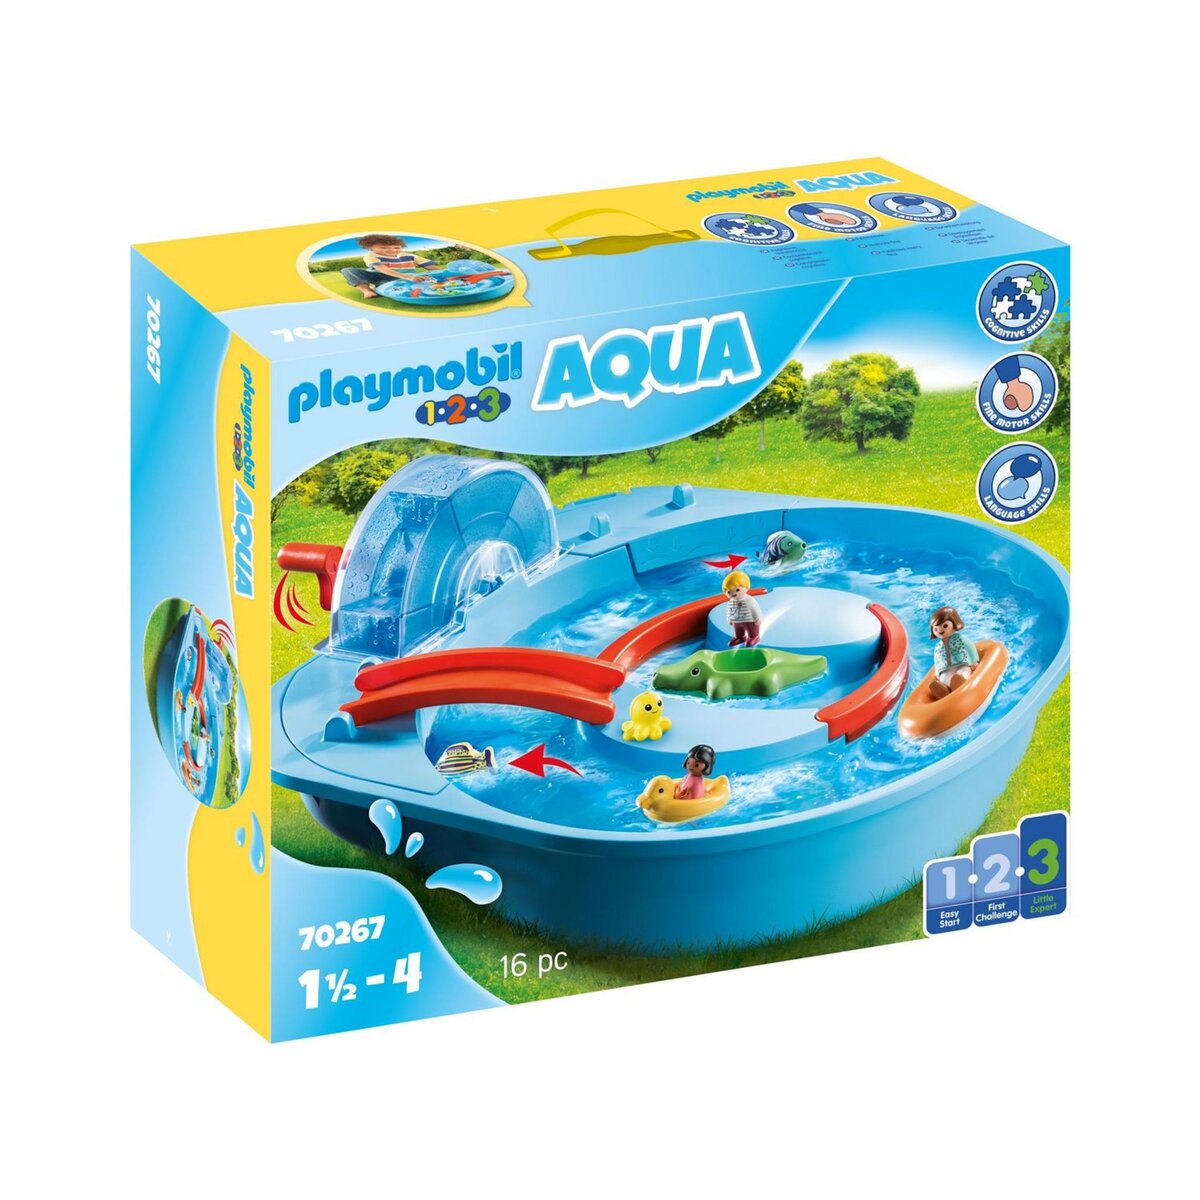 70269 Balançoire Aquatique Avec Arrosoir, 'playmobil' 1.2.3 Aqua